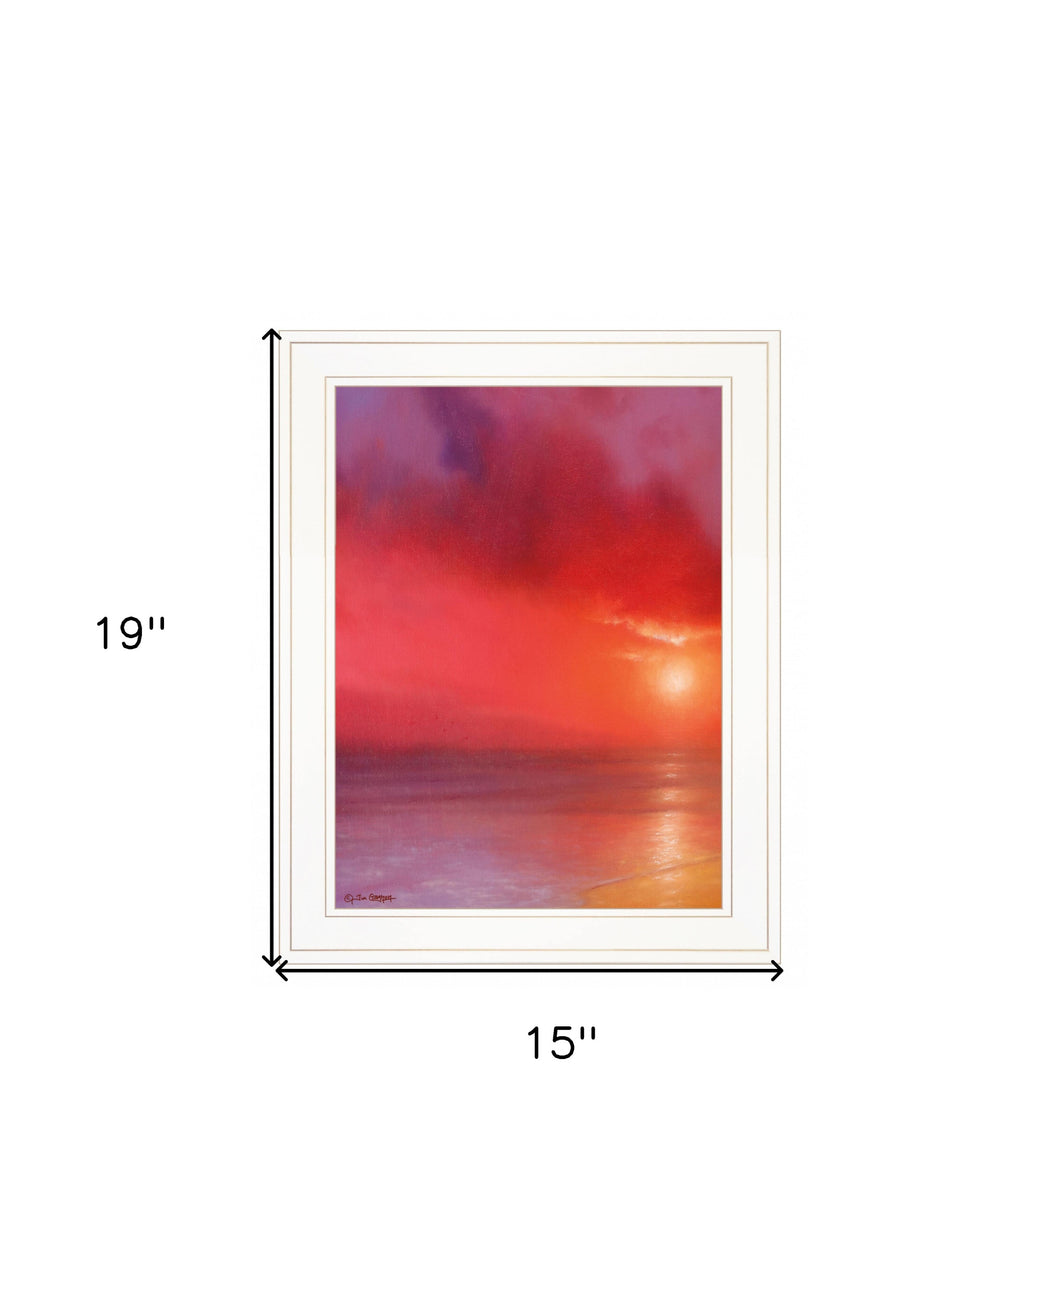 Sunset In Red 2 White Framed Print Wall Art